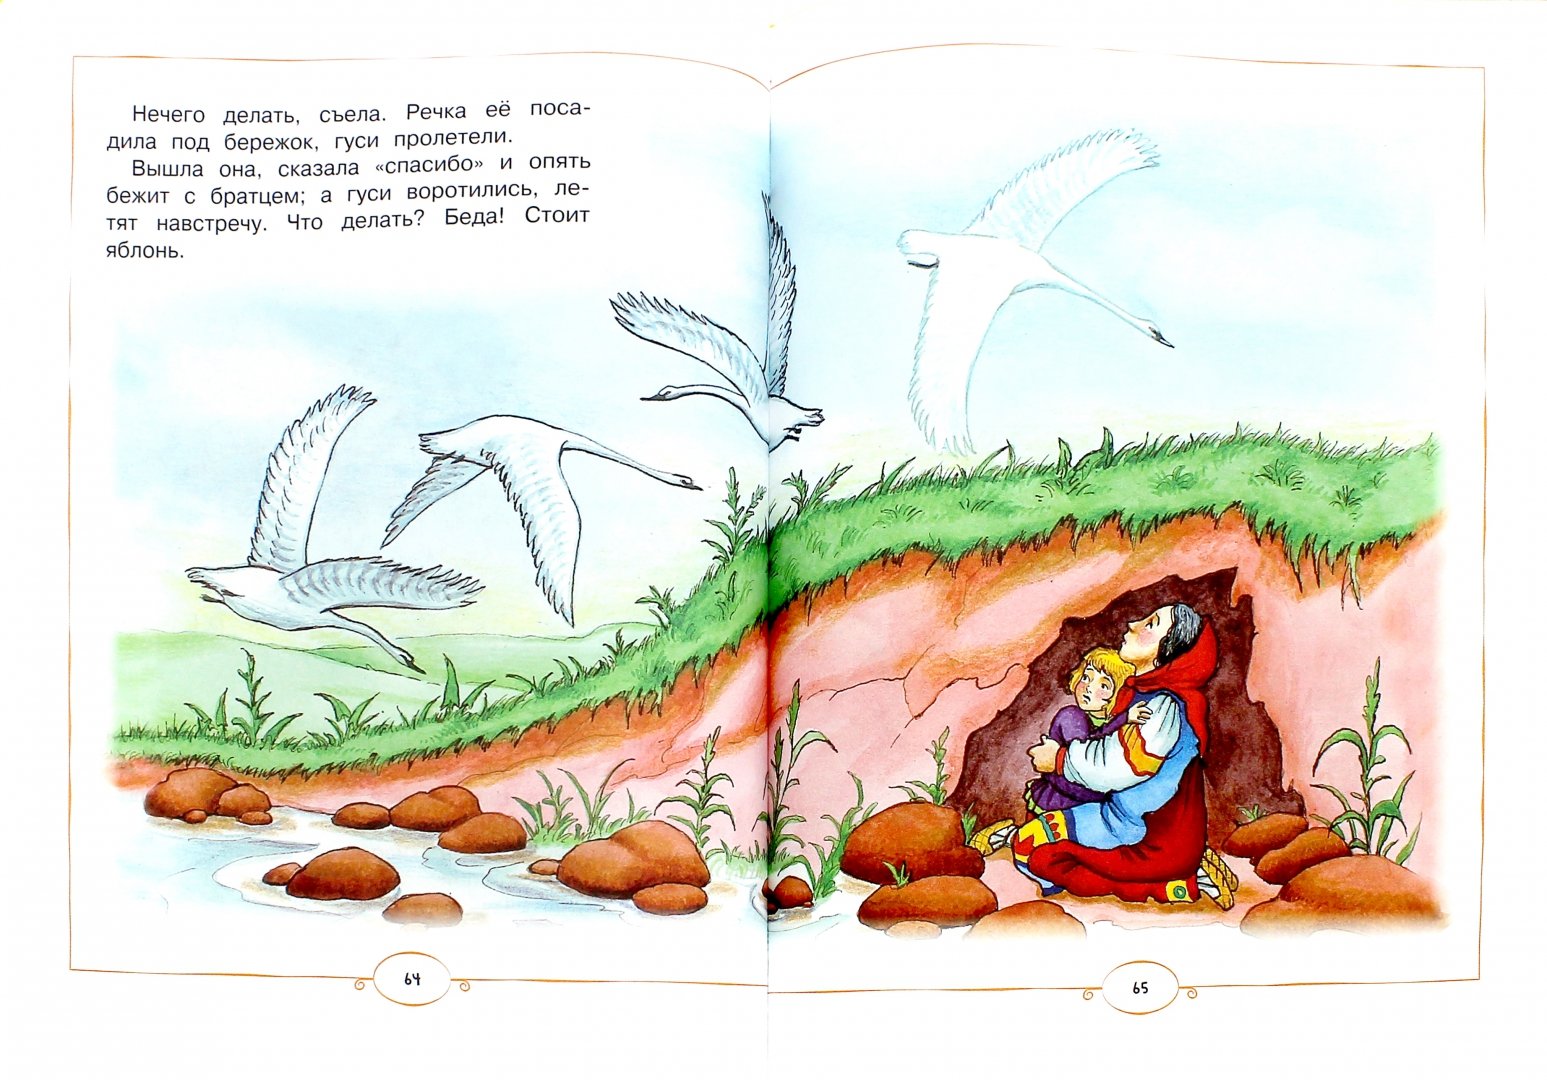 Иллюстрация 1 из 14 для Книга любимых сказок - Бианки, Житков, Толстой | Лабиринт - книги. Источник: Лабиринт